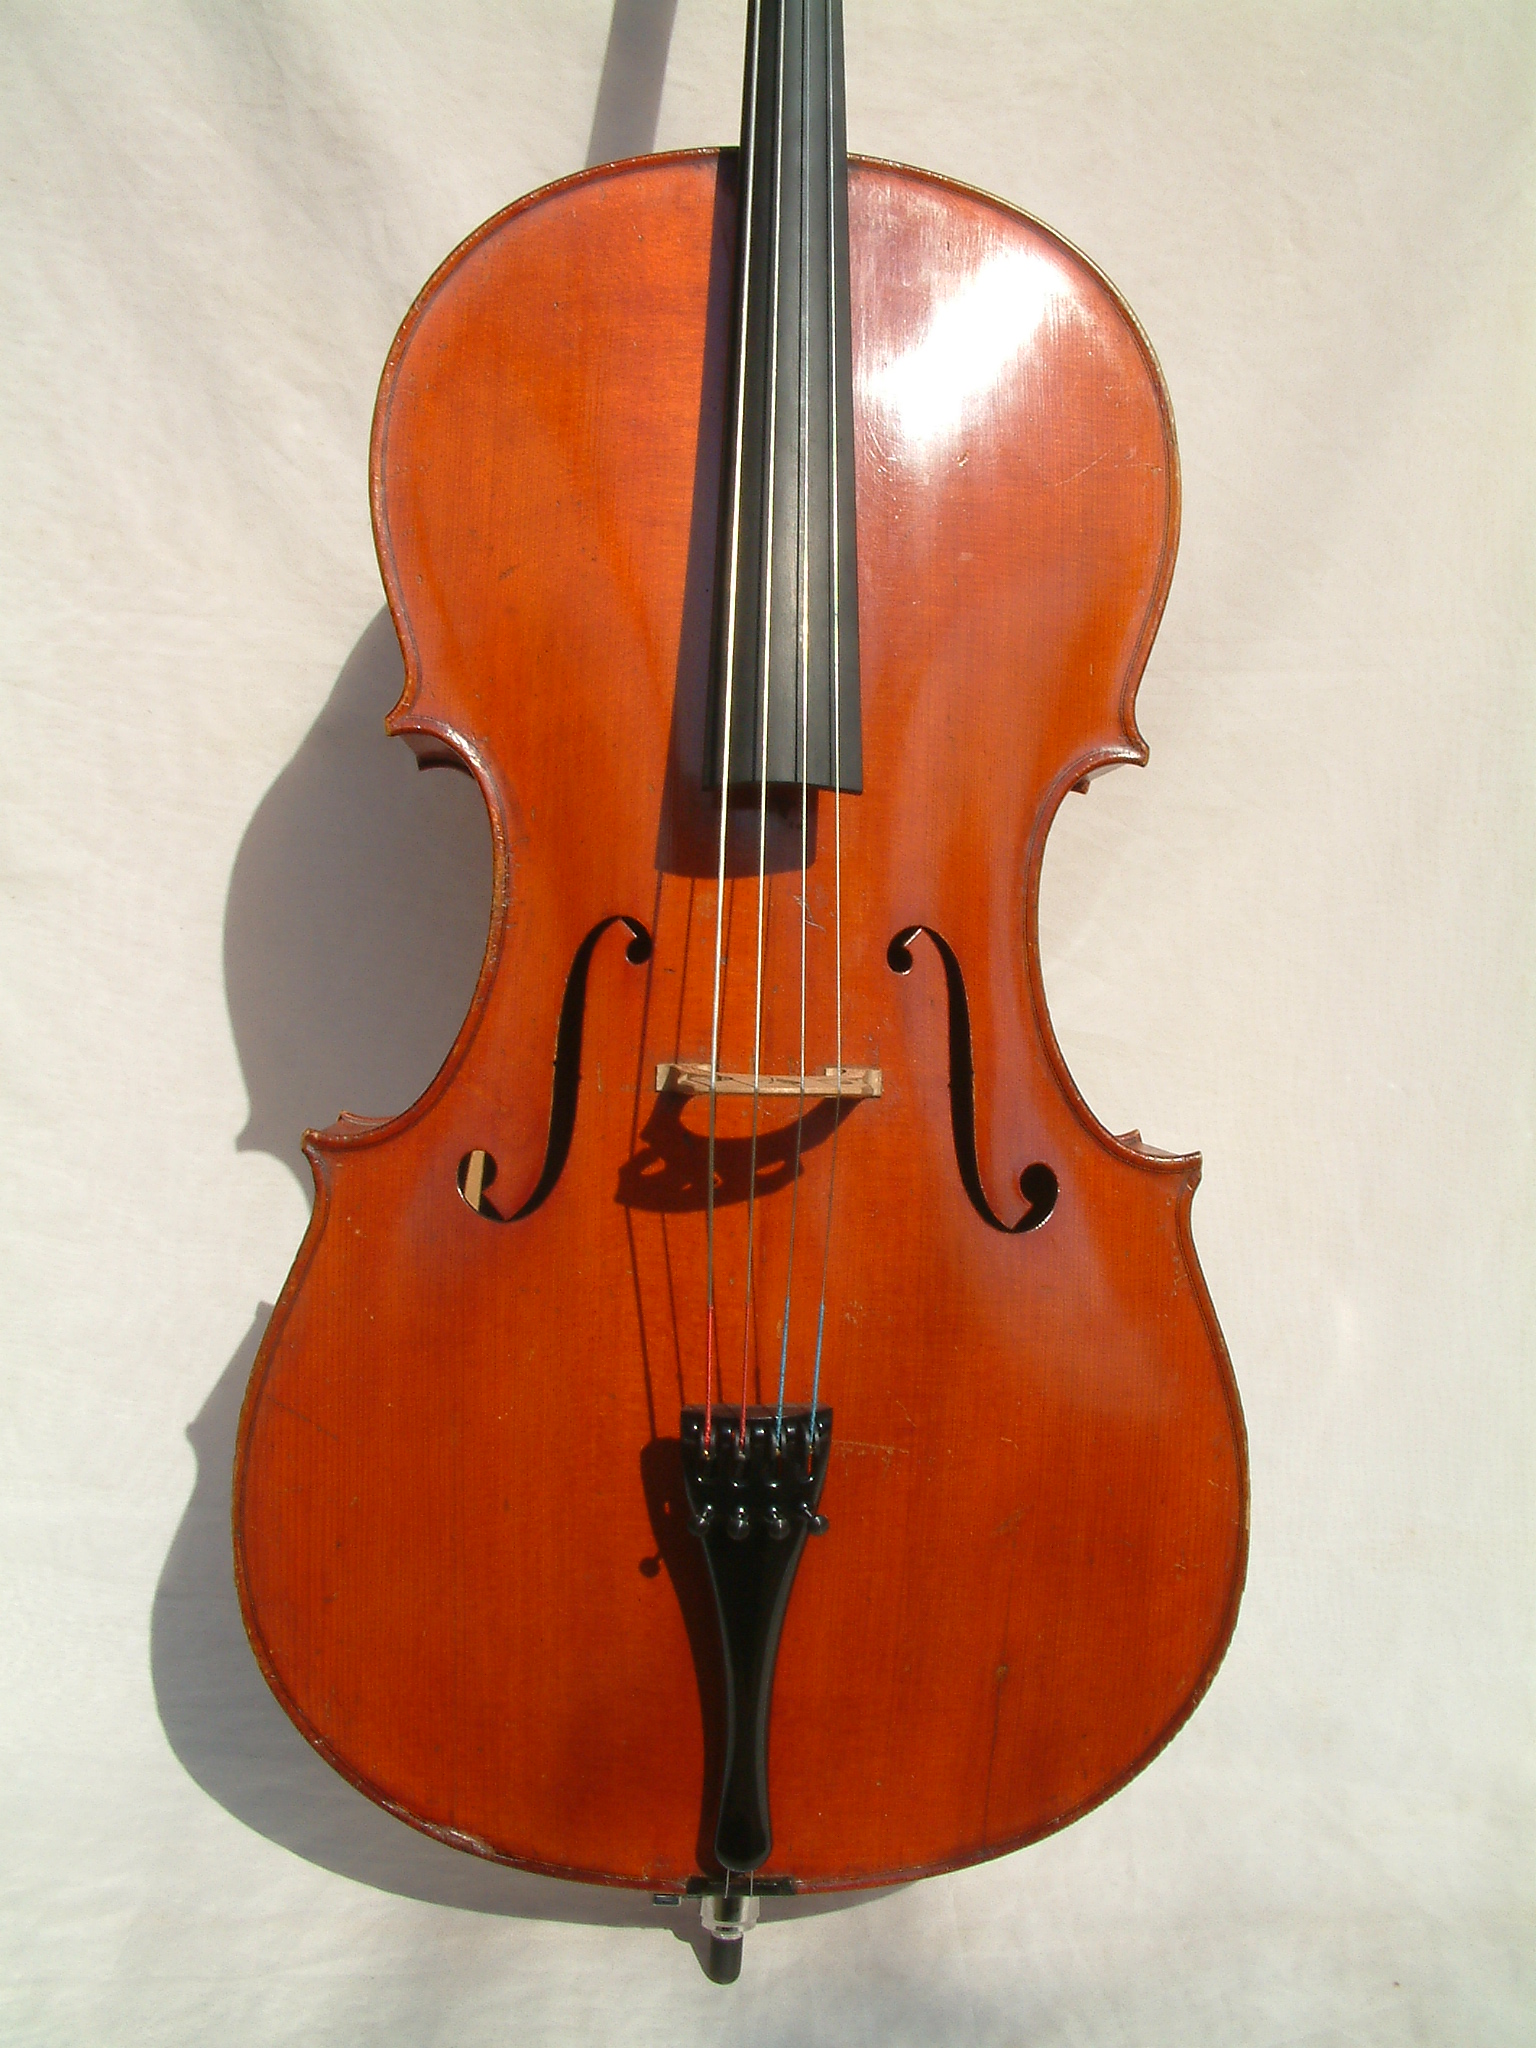 Farotti Celeste Cello 1903 Front Farotti Celeste Cello 1903 Front